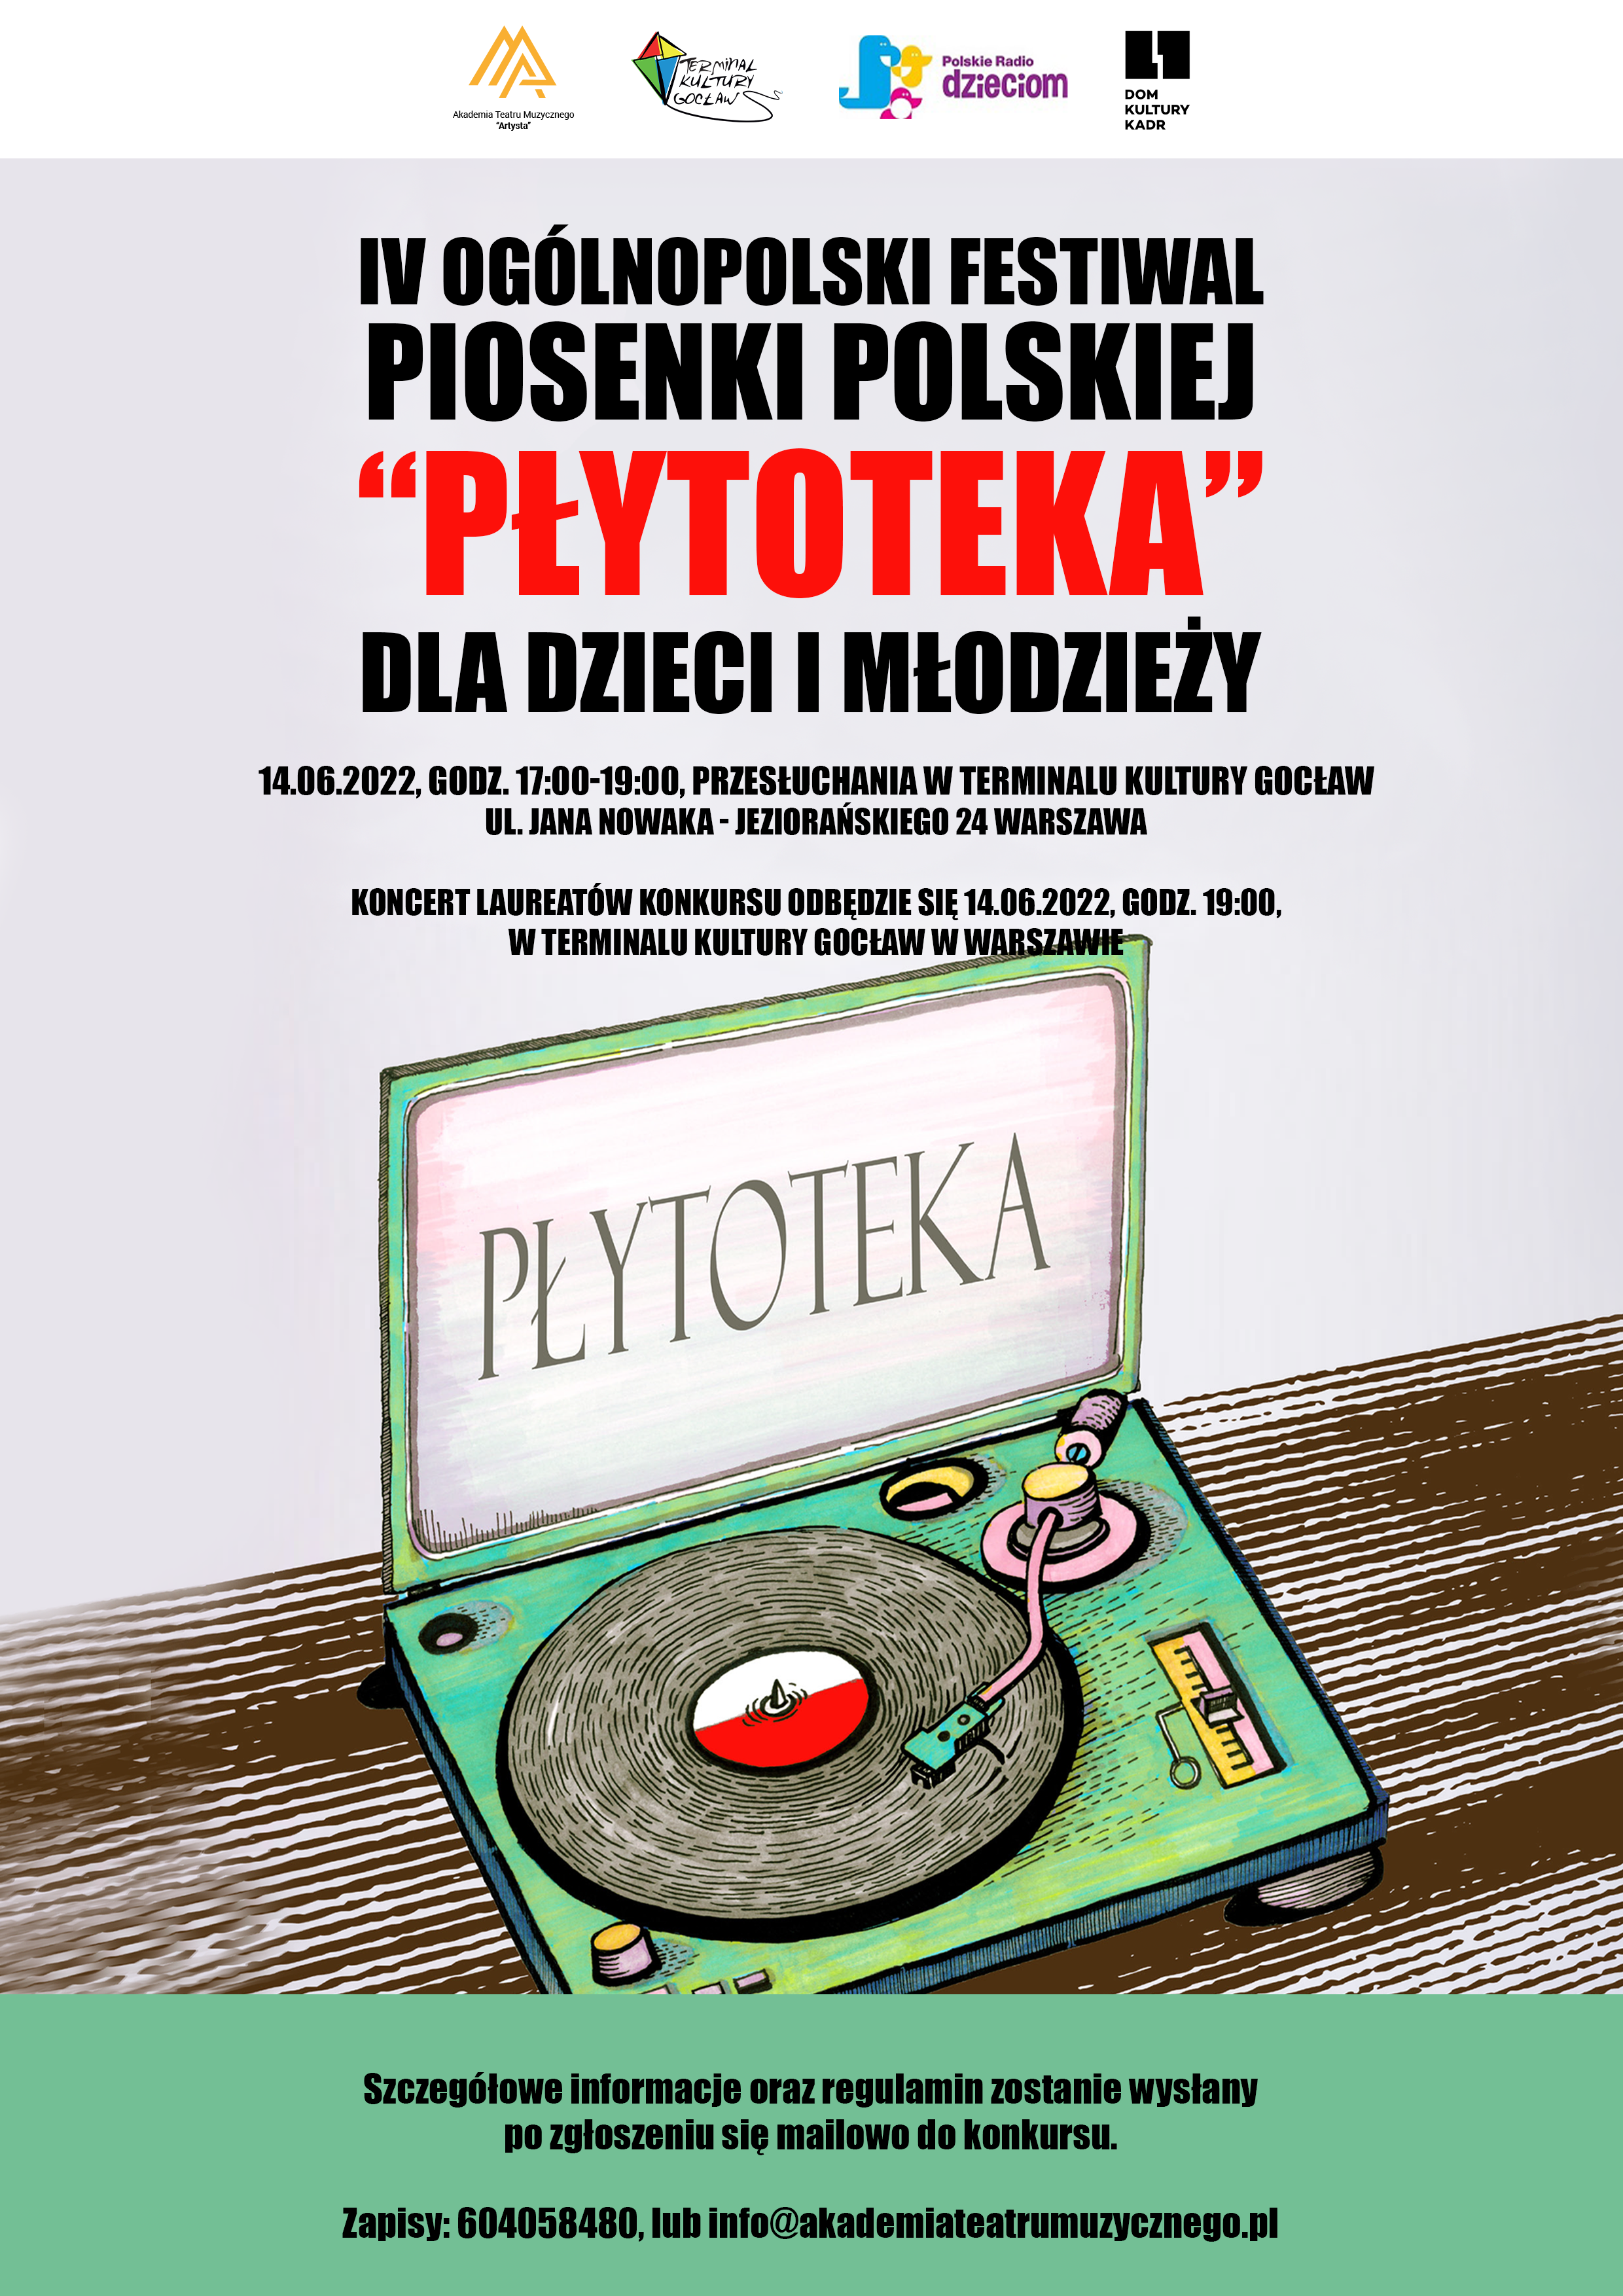  IV Ogólnopolski Festiwal Piosenki Polskiej "Płytoteka" 